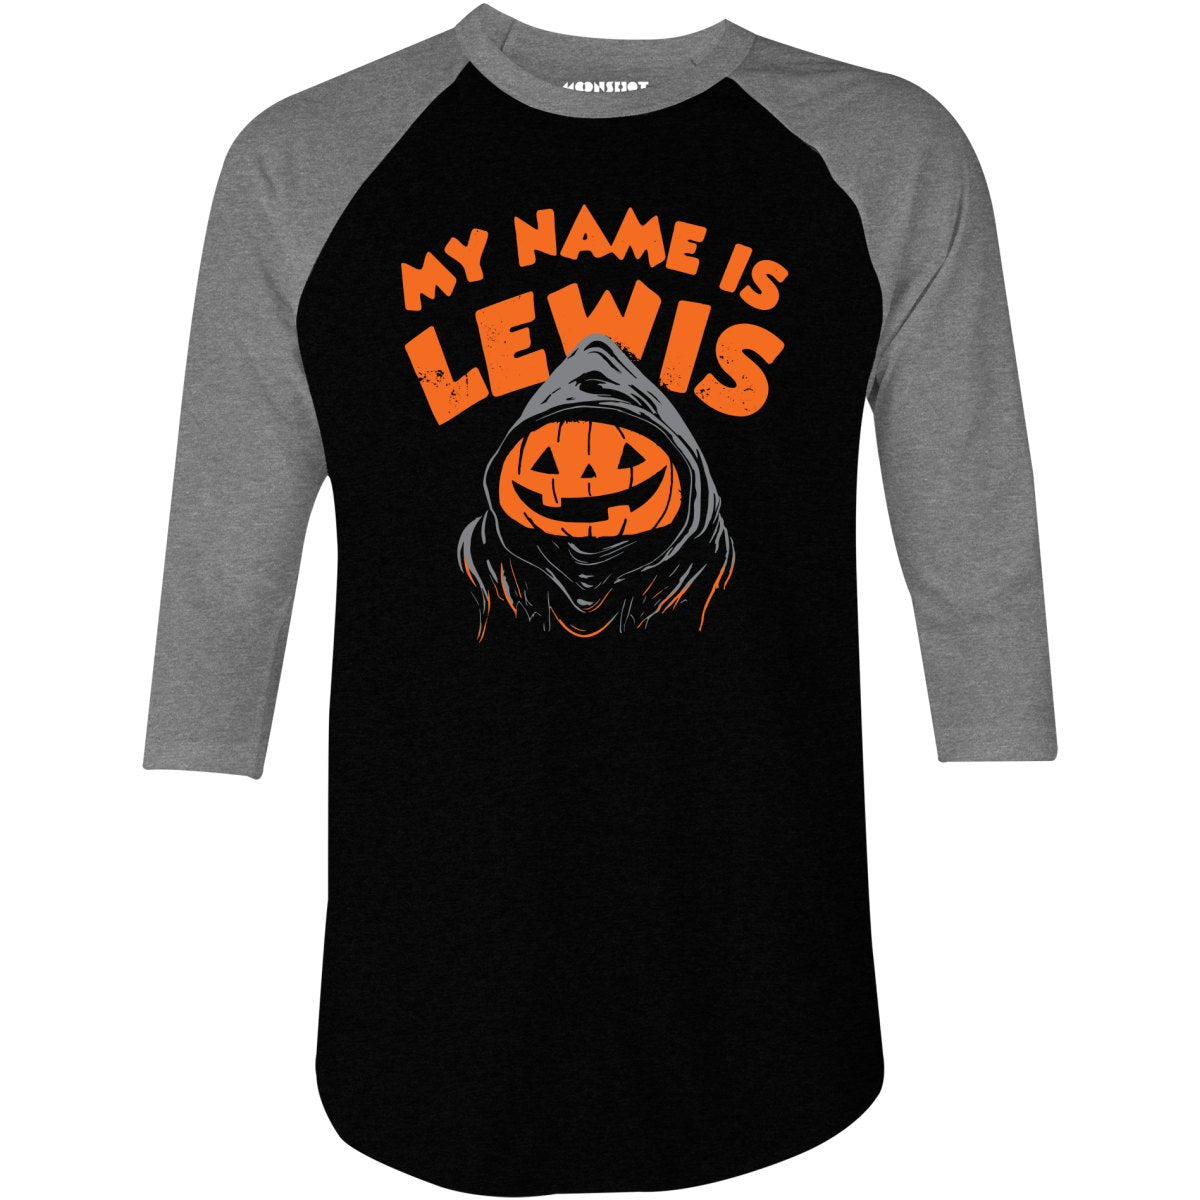 My Name is Lewis - 3/4 Sleeve Raglan T-Shirt